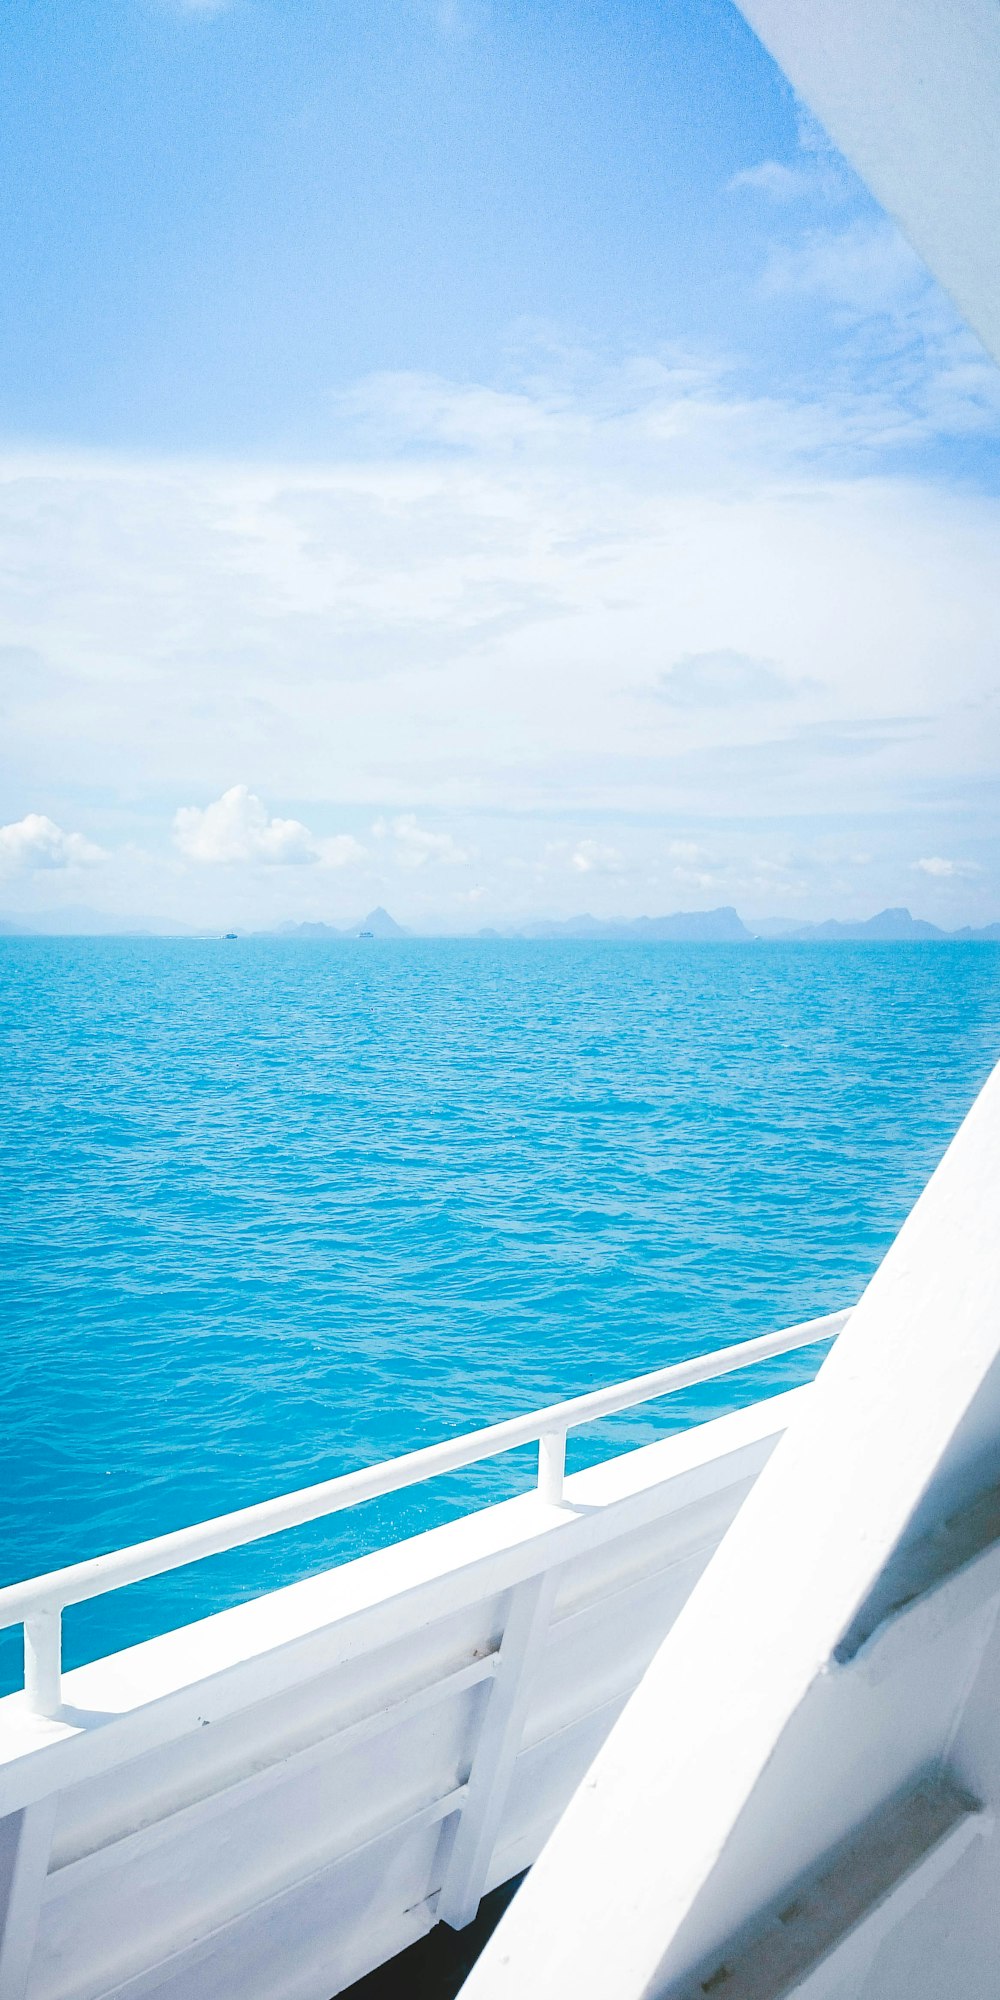 Bateau blanc voyageant sur l’océan pendant la journée